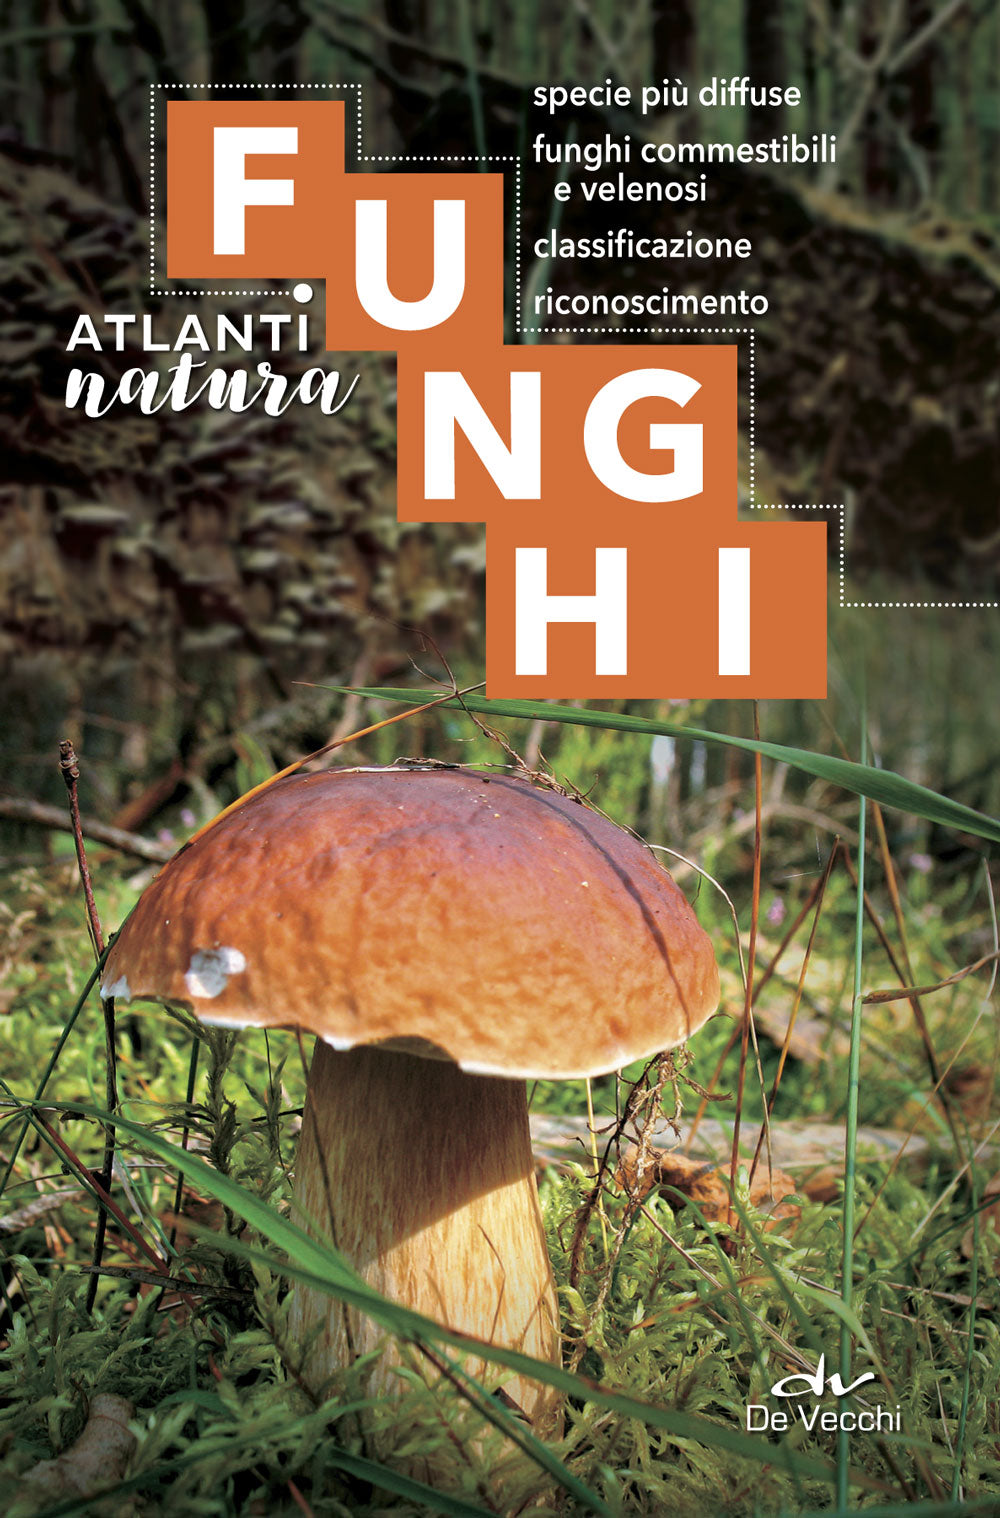 Funghi::specie più diffuse, funghi commestibili e velenosi, classificazione, riconoscimento